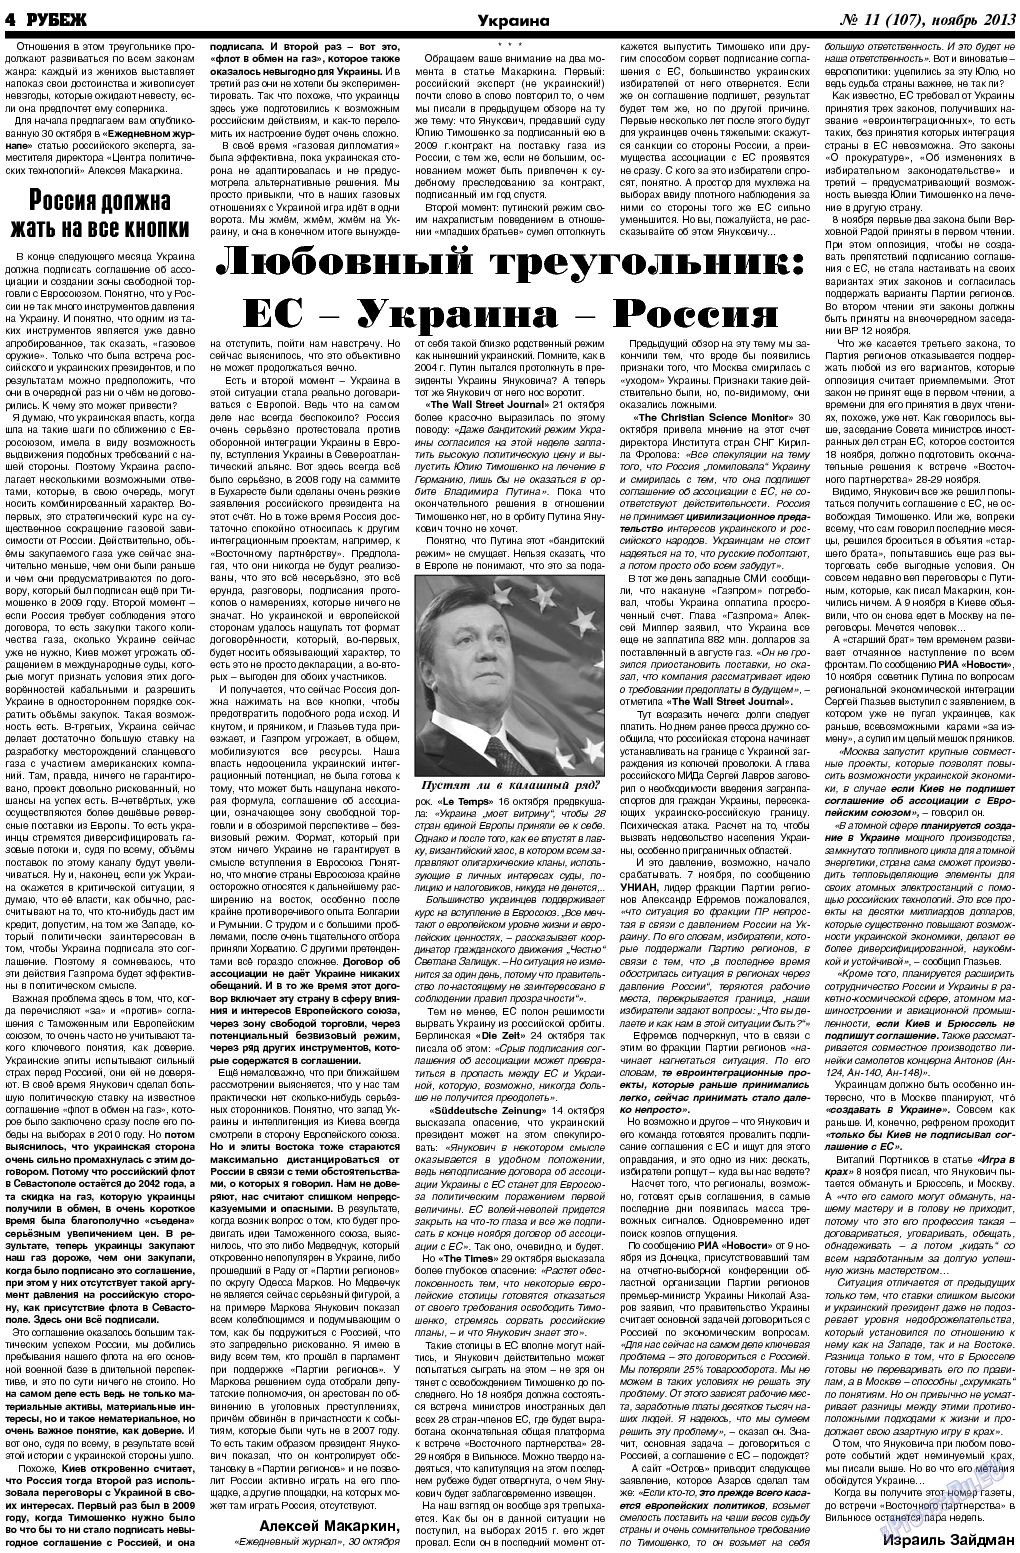 Рубеж (газета). 2013 год, номер 11, стр. 4